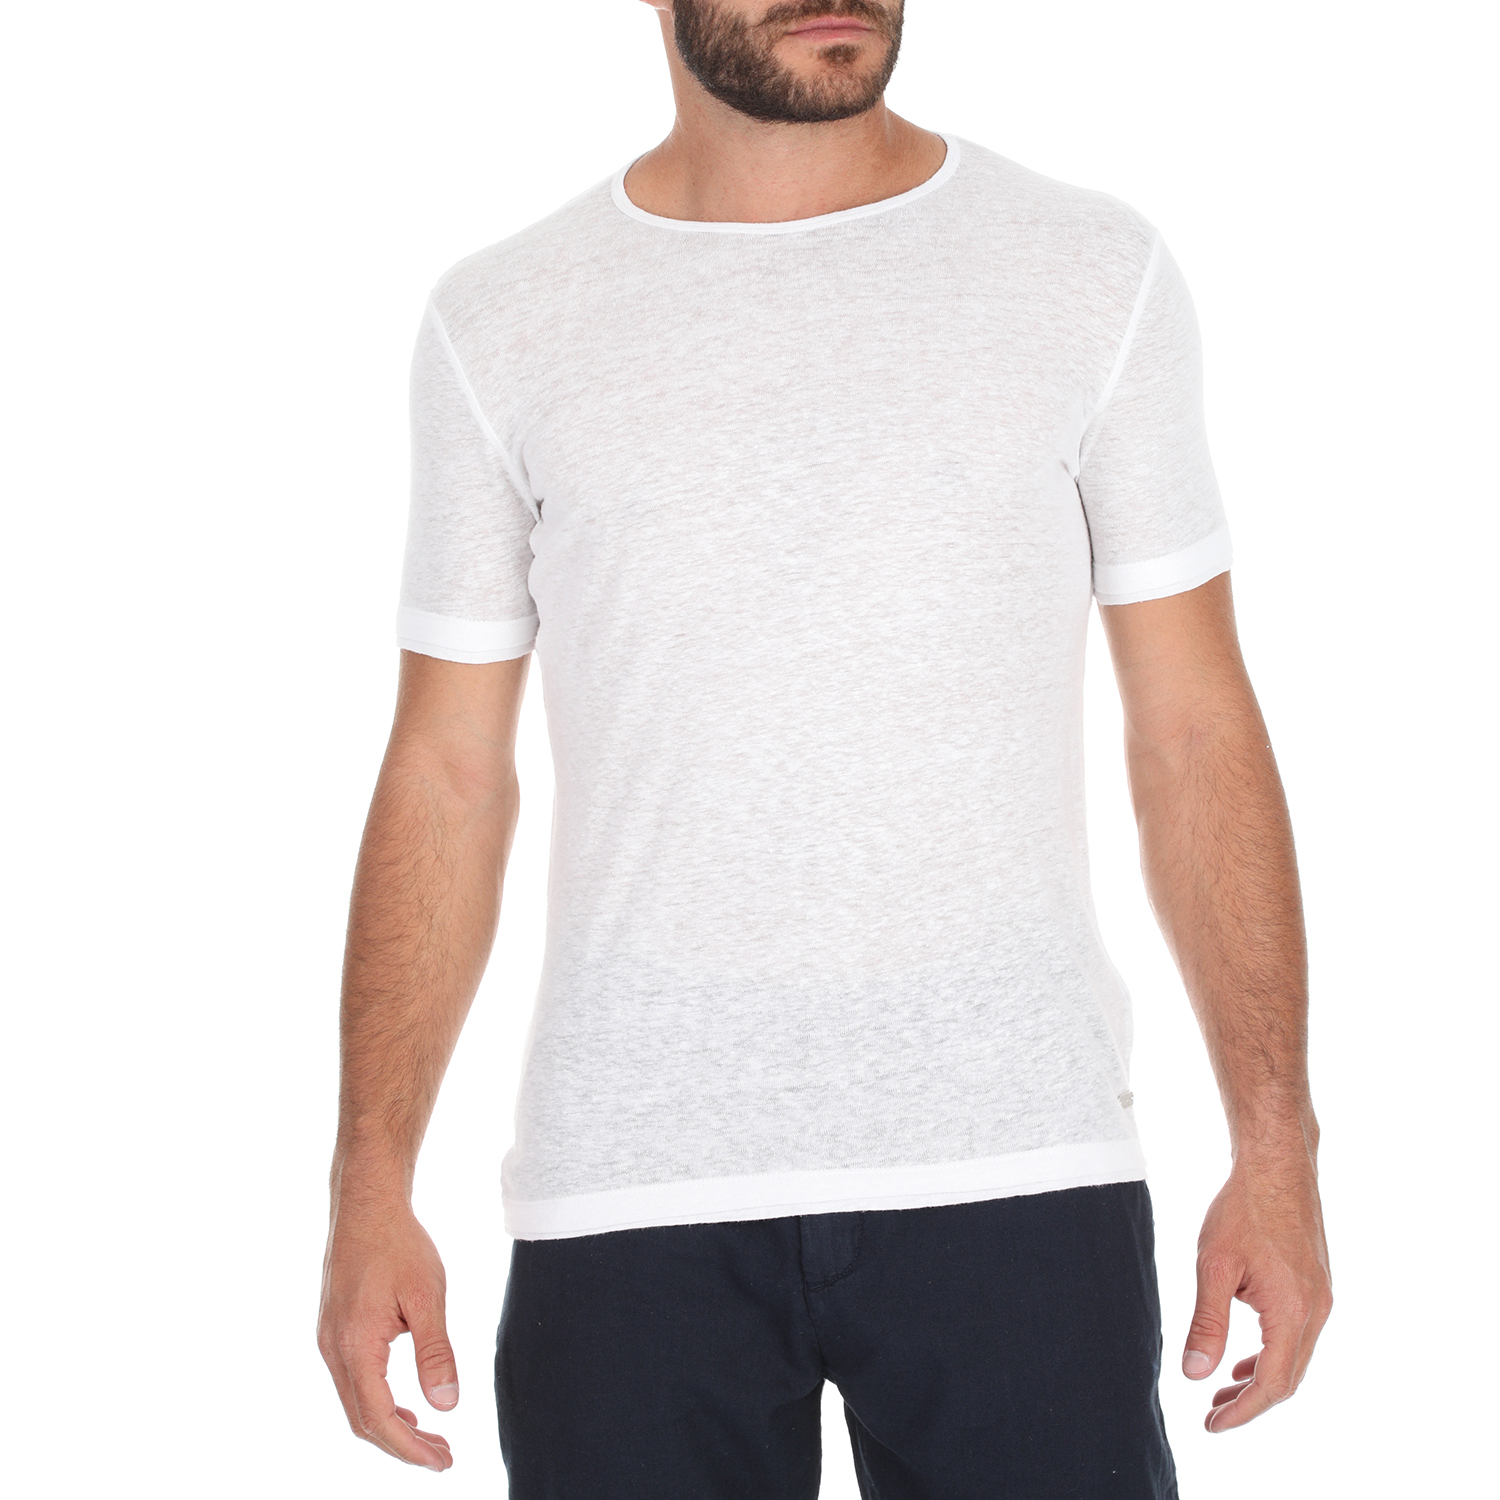 Ανδρικά/Ρούχα/Μπλούζες/Κοντομάνικες SSEINSE - Ανδρικό t-shirt SSEINSE λευκό